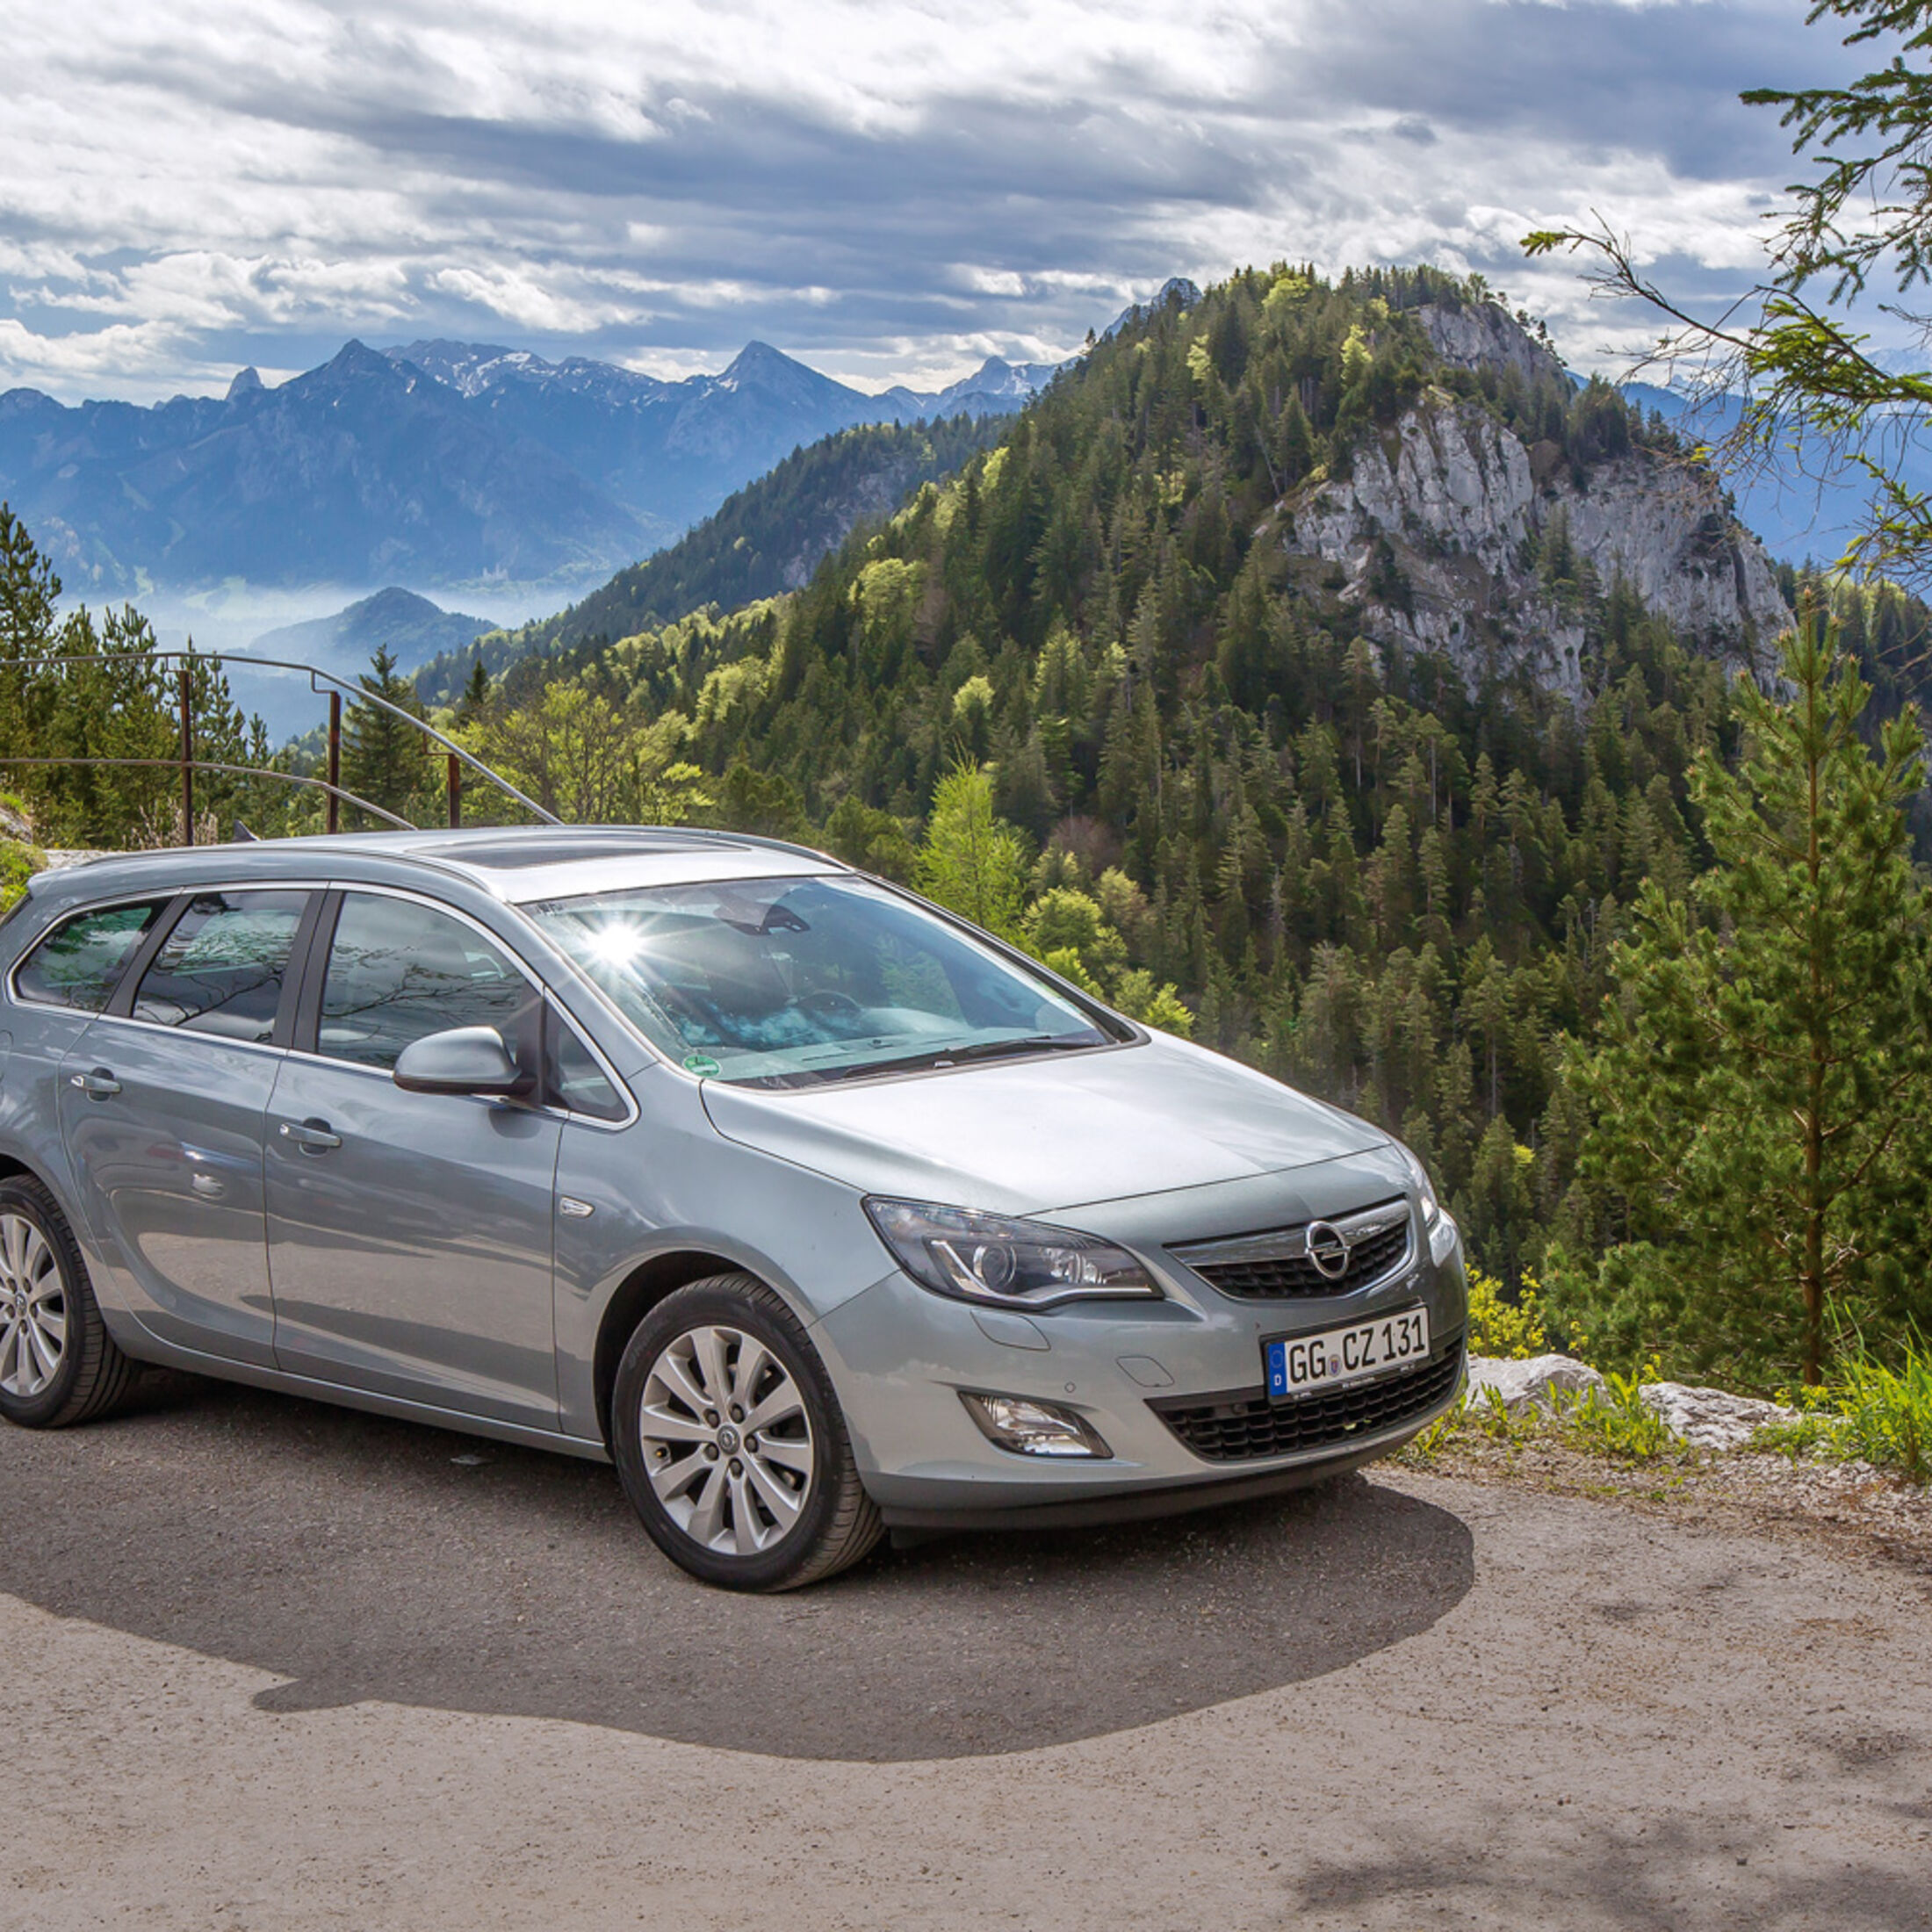 https://imgr1.auto-motor-und-sport.de/Opel-Astra-Sports-Tourer-2-0-CDTi-Seitenansicht-jsonLd1x1-c39e7c87-690663.jpg